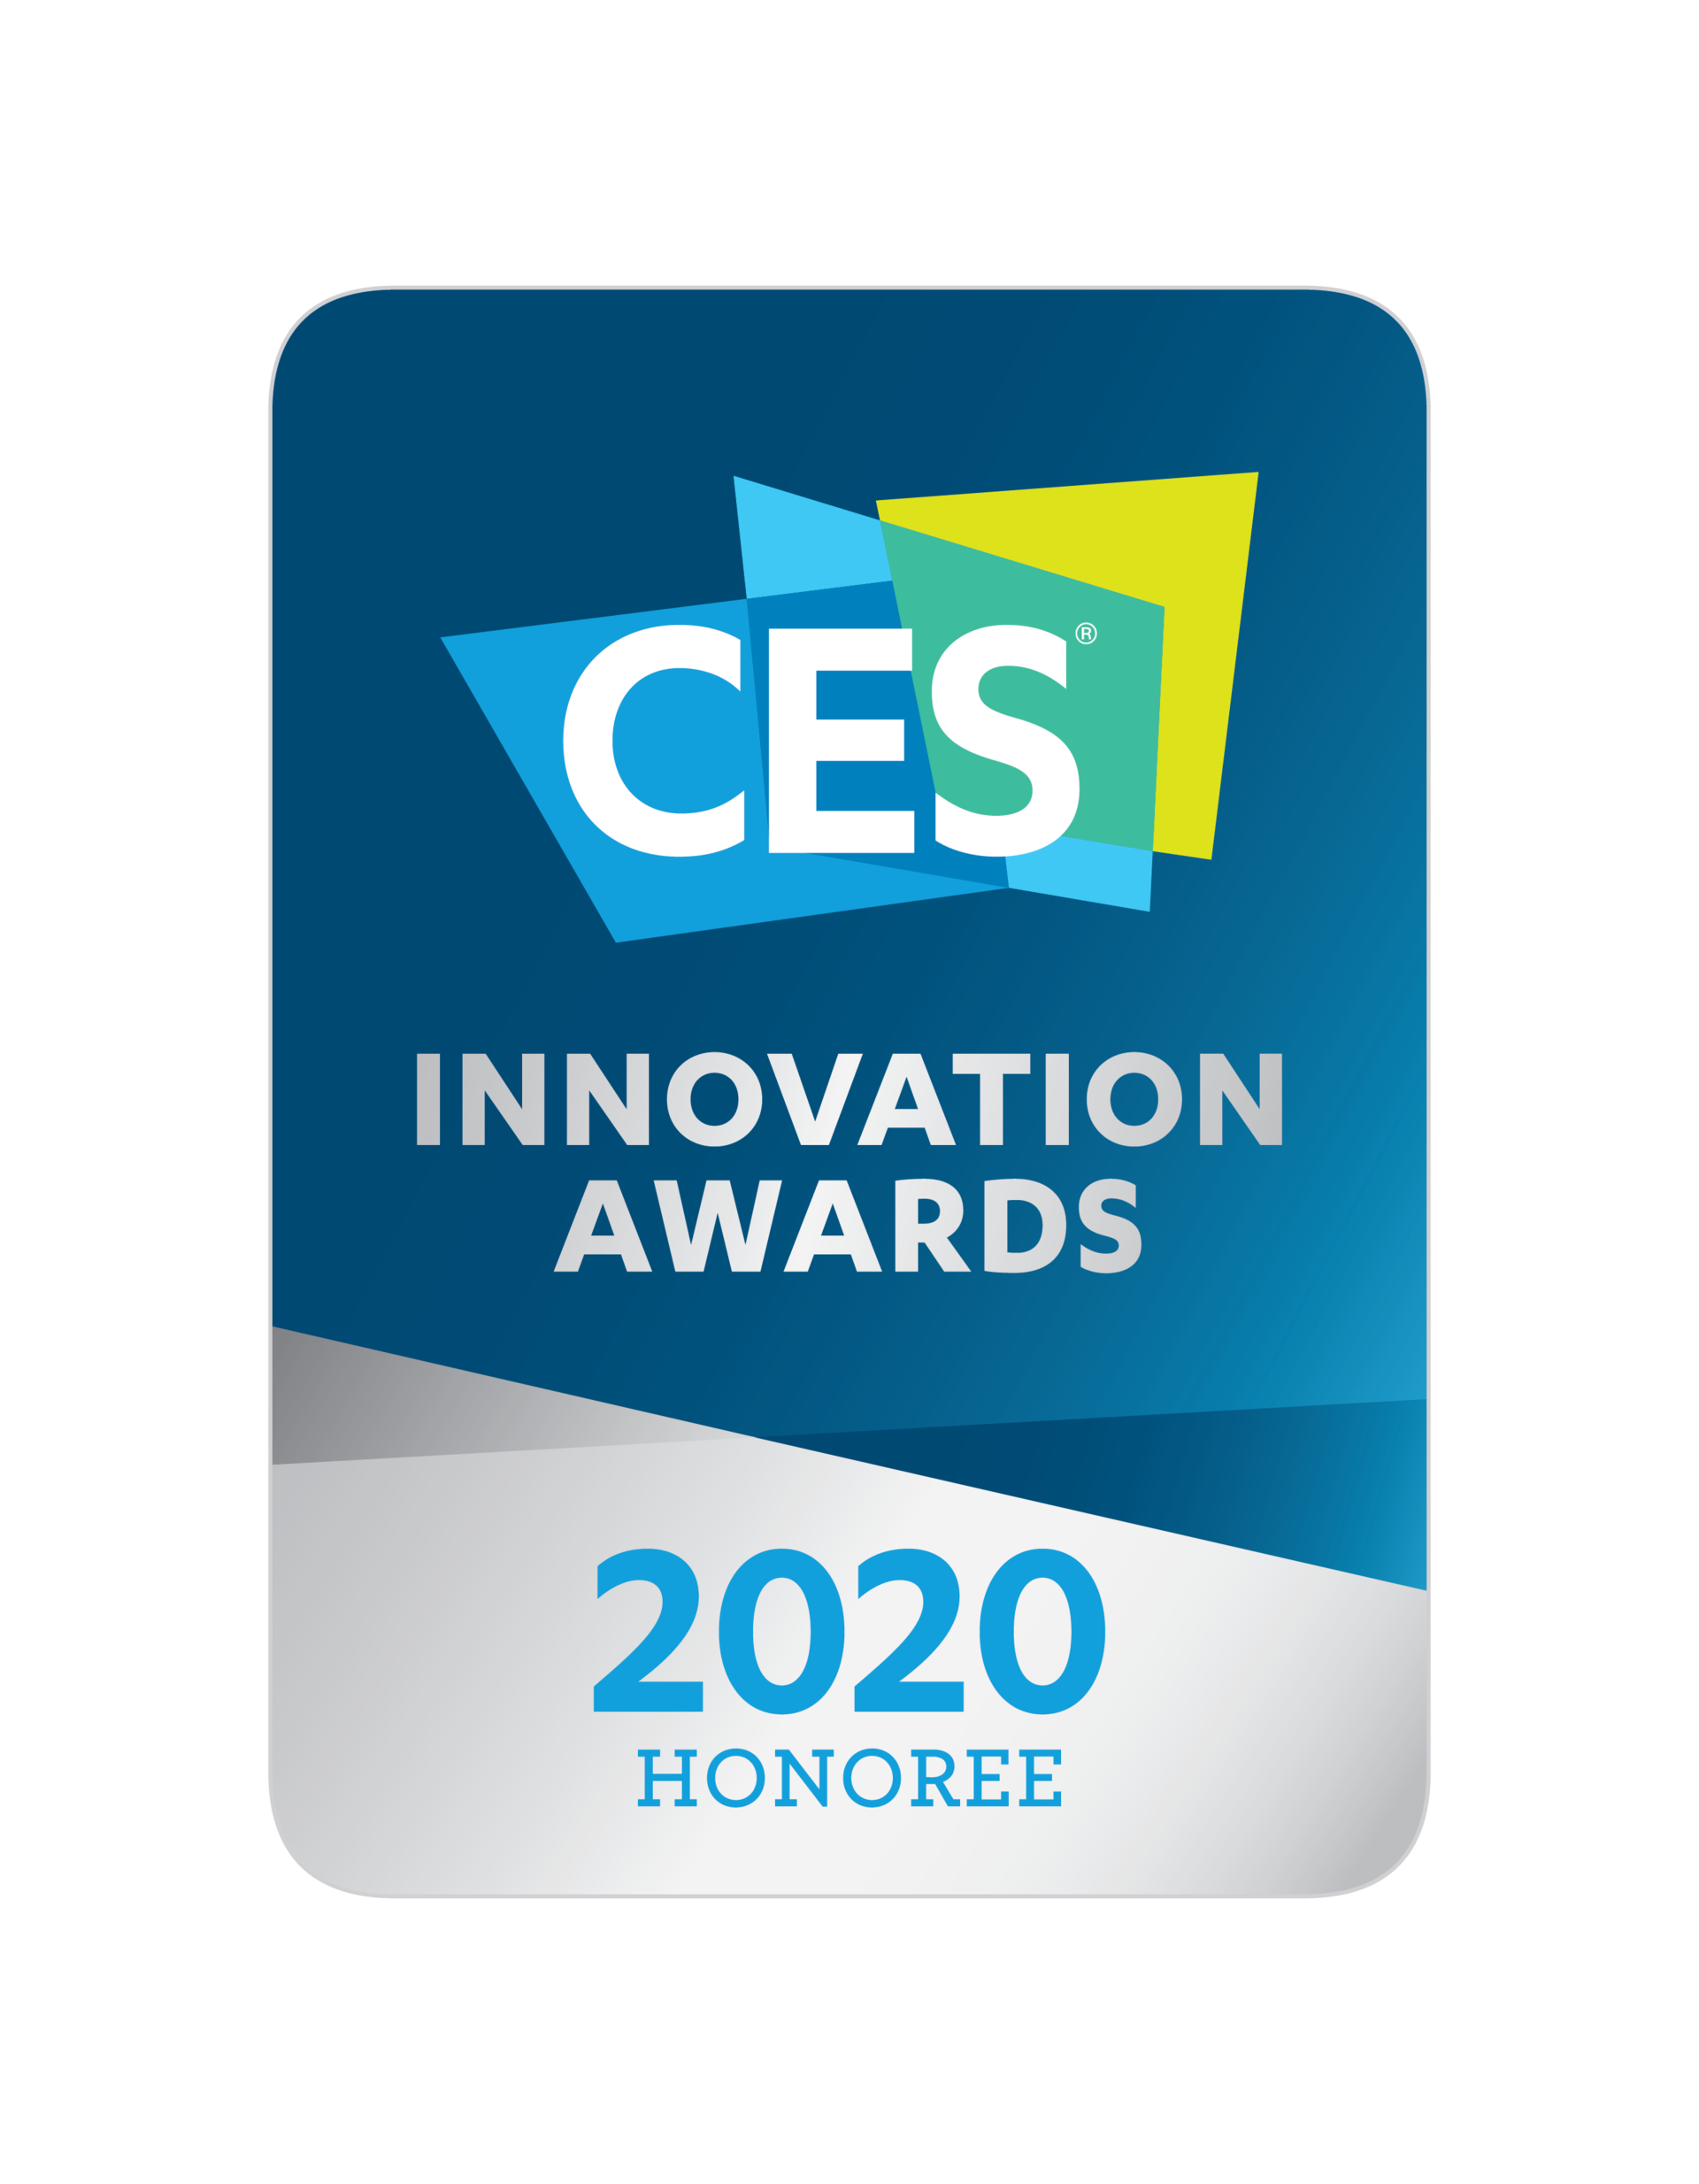 Die CES Innovation Awards basieren auf den Juroren vorliegenden Informationsmaterialien. Die Richtigkeit der eingereichten Unterlagen oder der geltend gemachten Ansprüche wurde von der CTA (Consumer Technology Association) nicht überprüft. Das mit dem Preis ausgezeichnete Produkt wurde von der CTA nicht getestet.